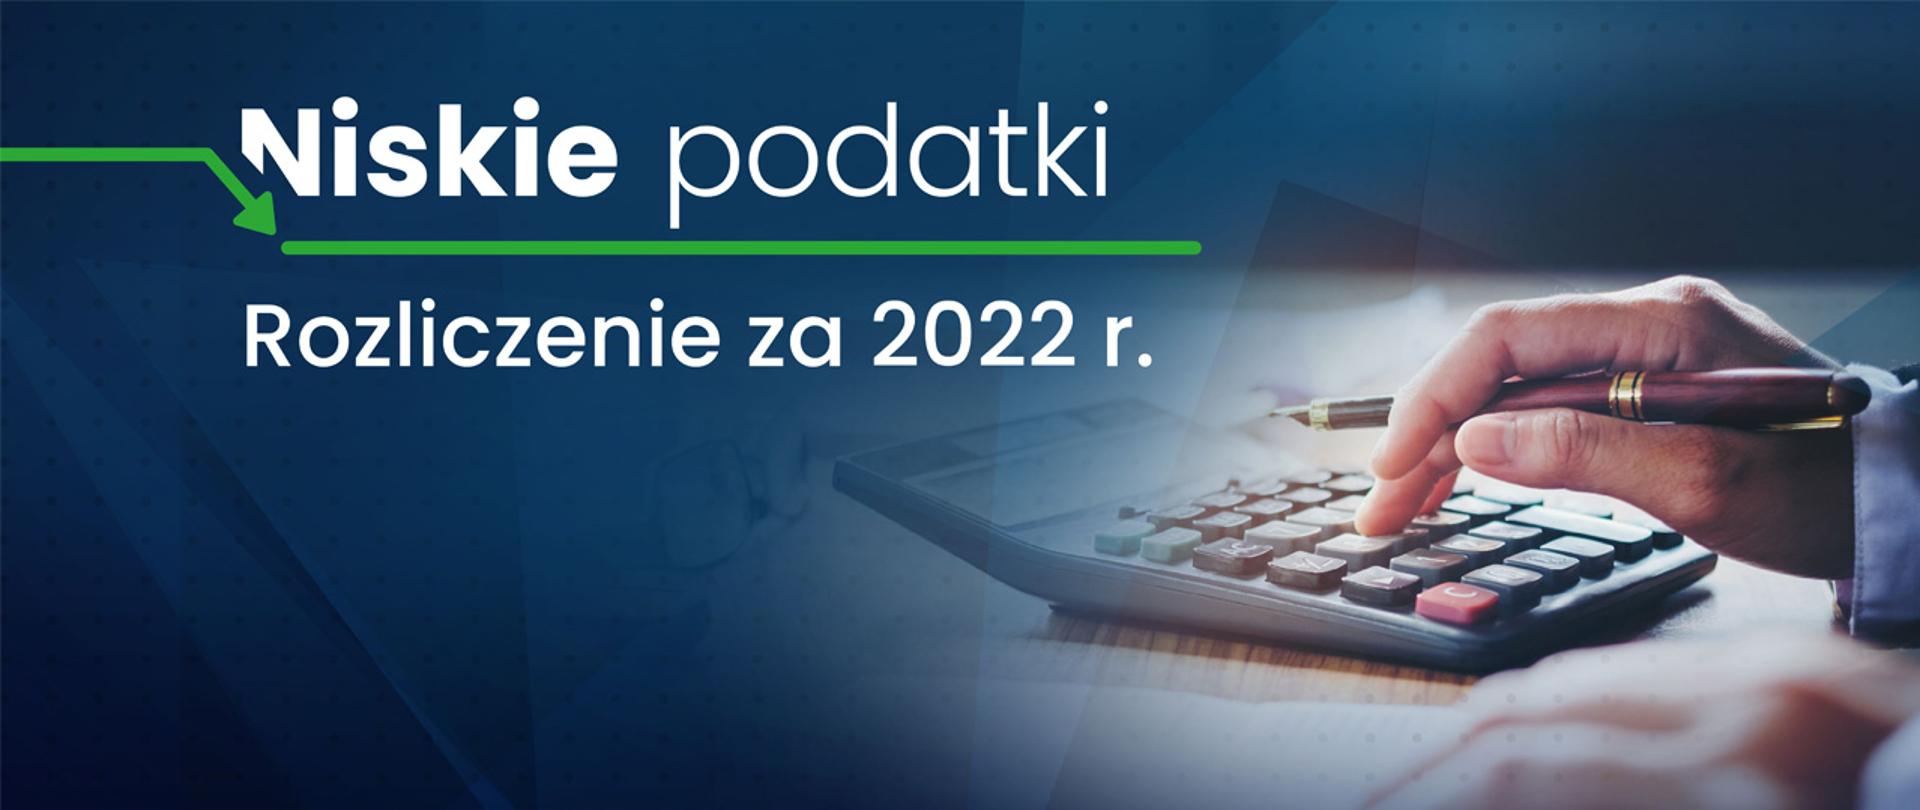 Dłoń z piórem, kalkulator, napis Niskie podatki rozliczenie za 2022 r.